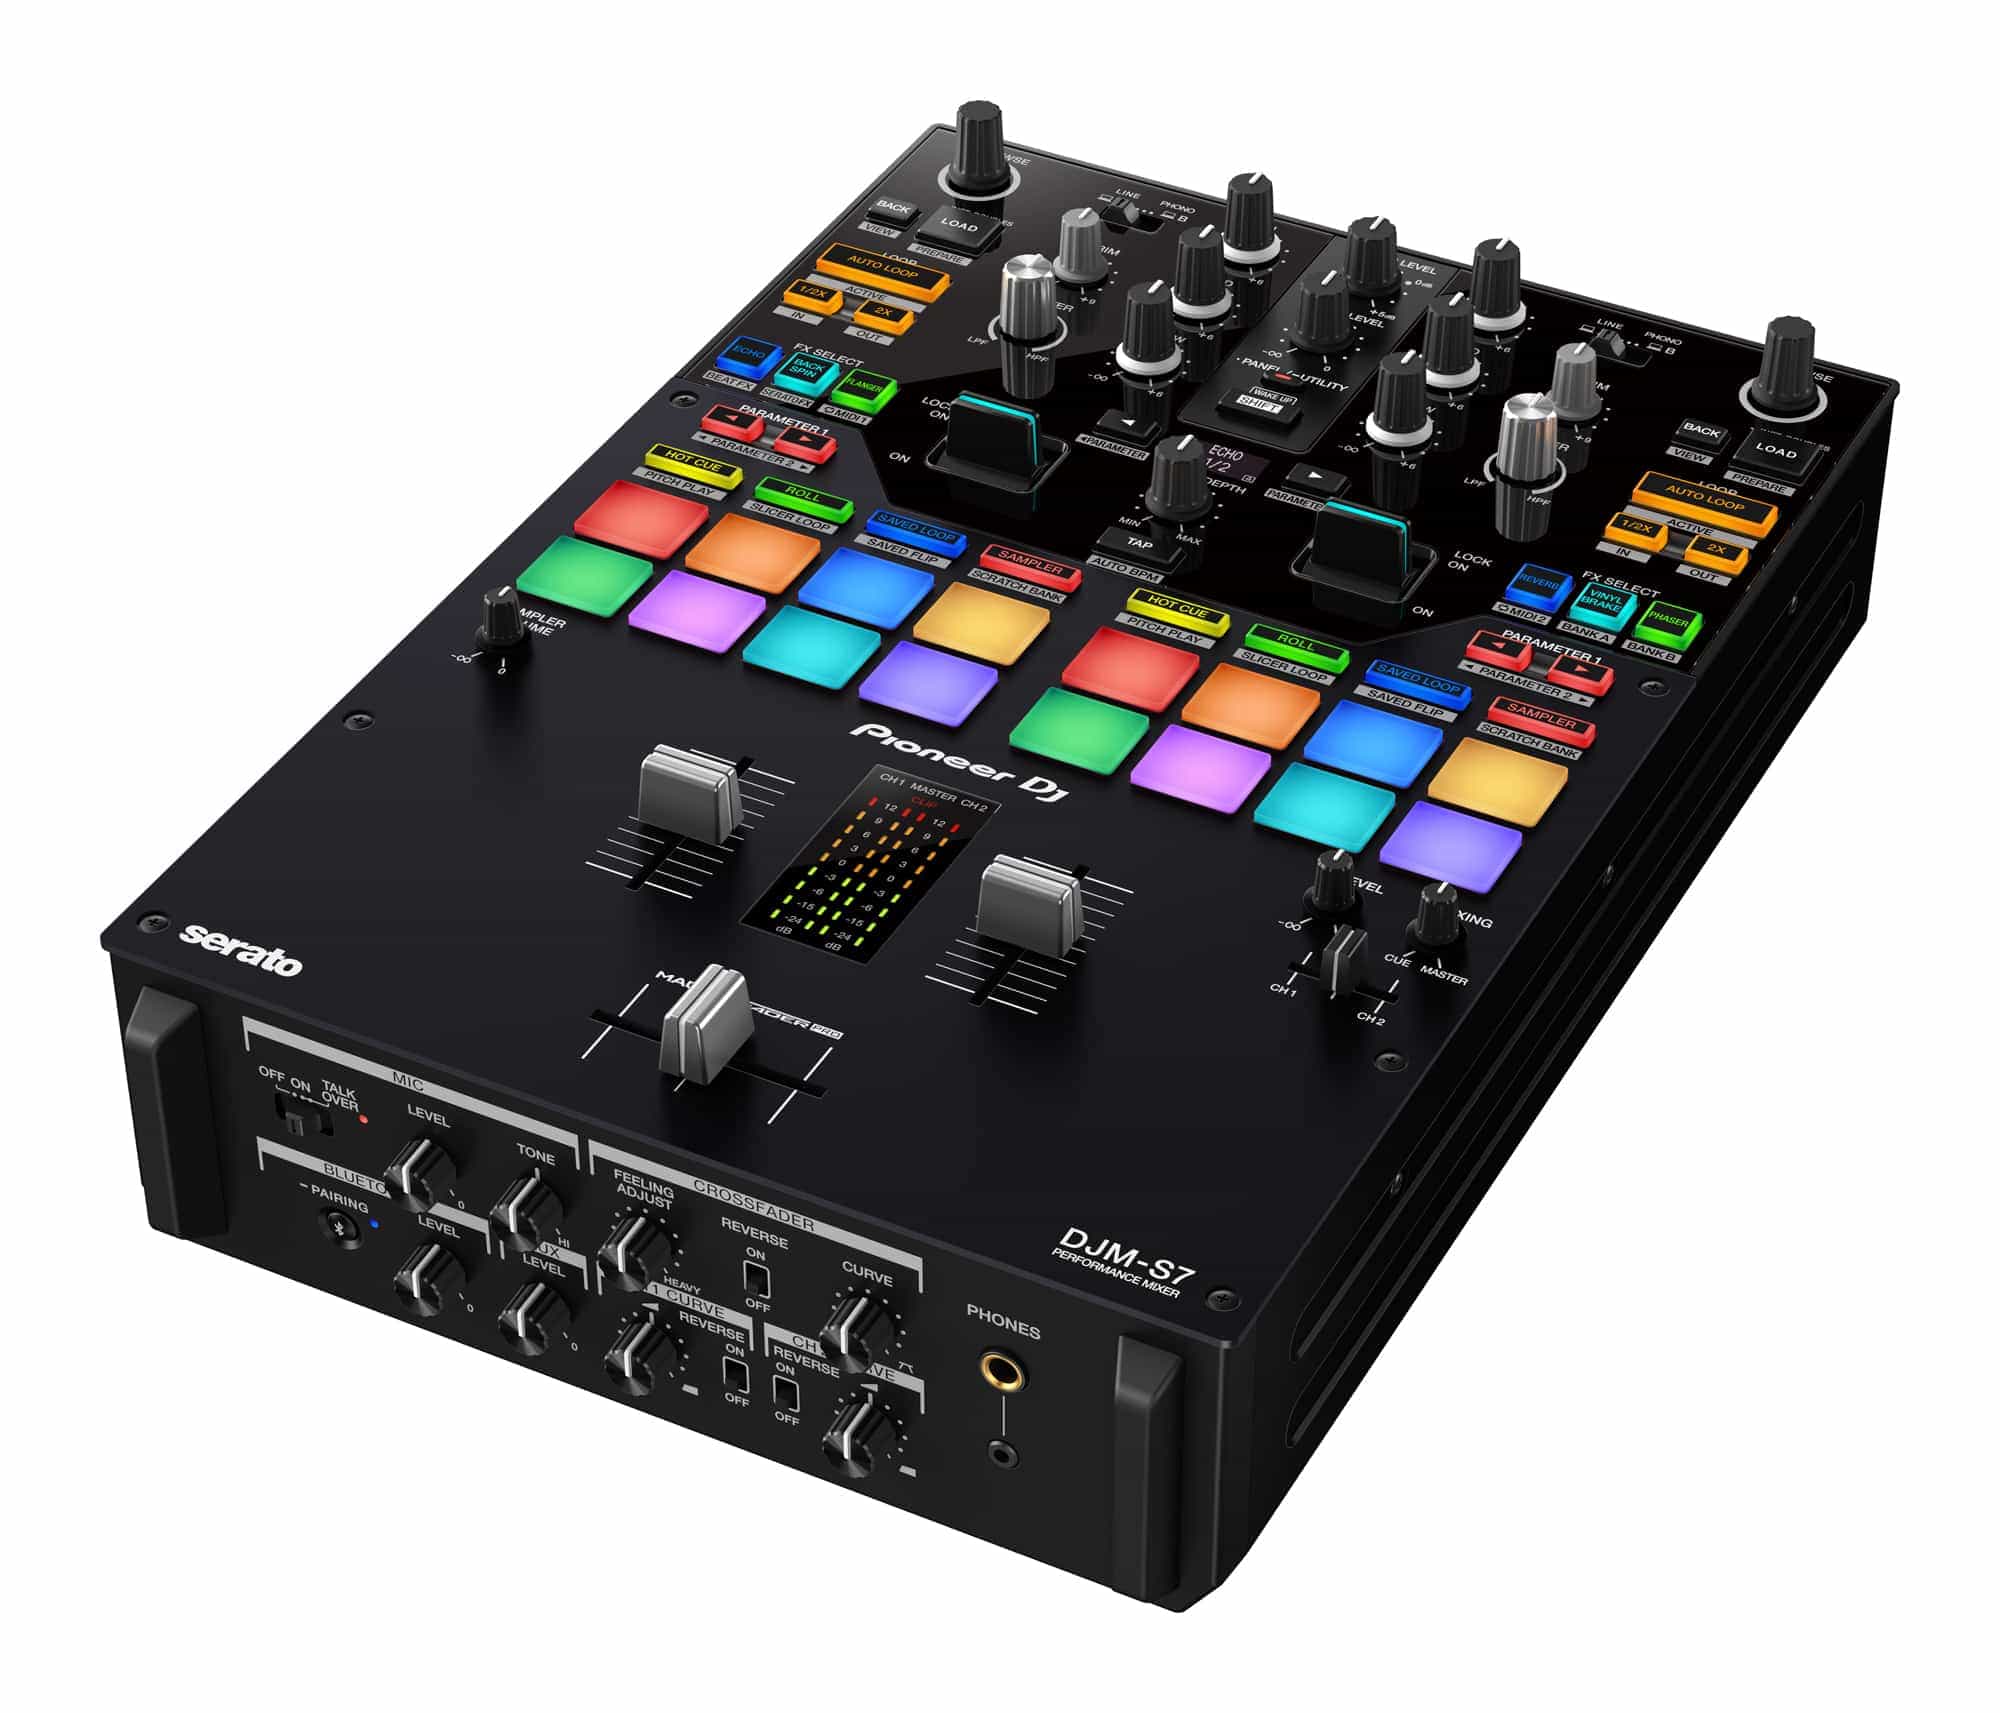 DJM-S7 de DJ Pioneer: un mezclador de batalla de 2 canales con la nueva función "Loop Midi" 1